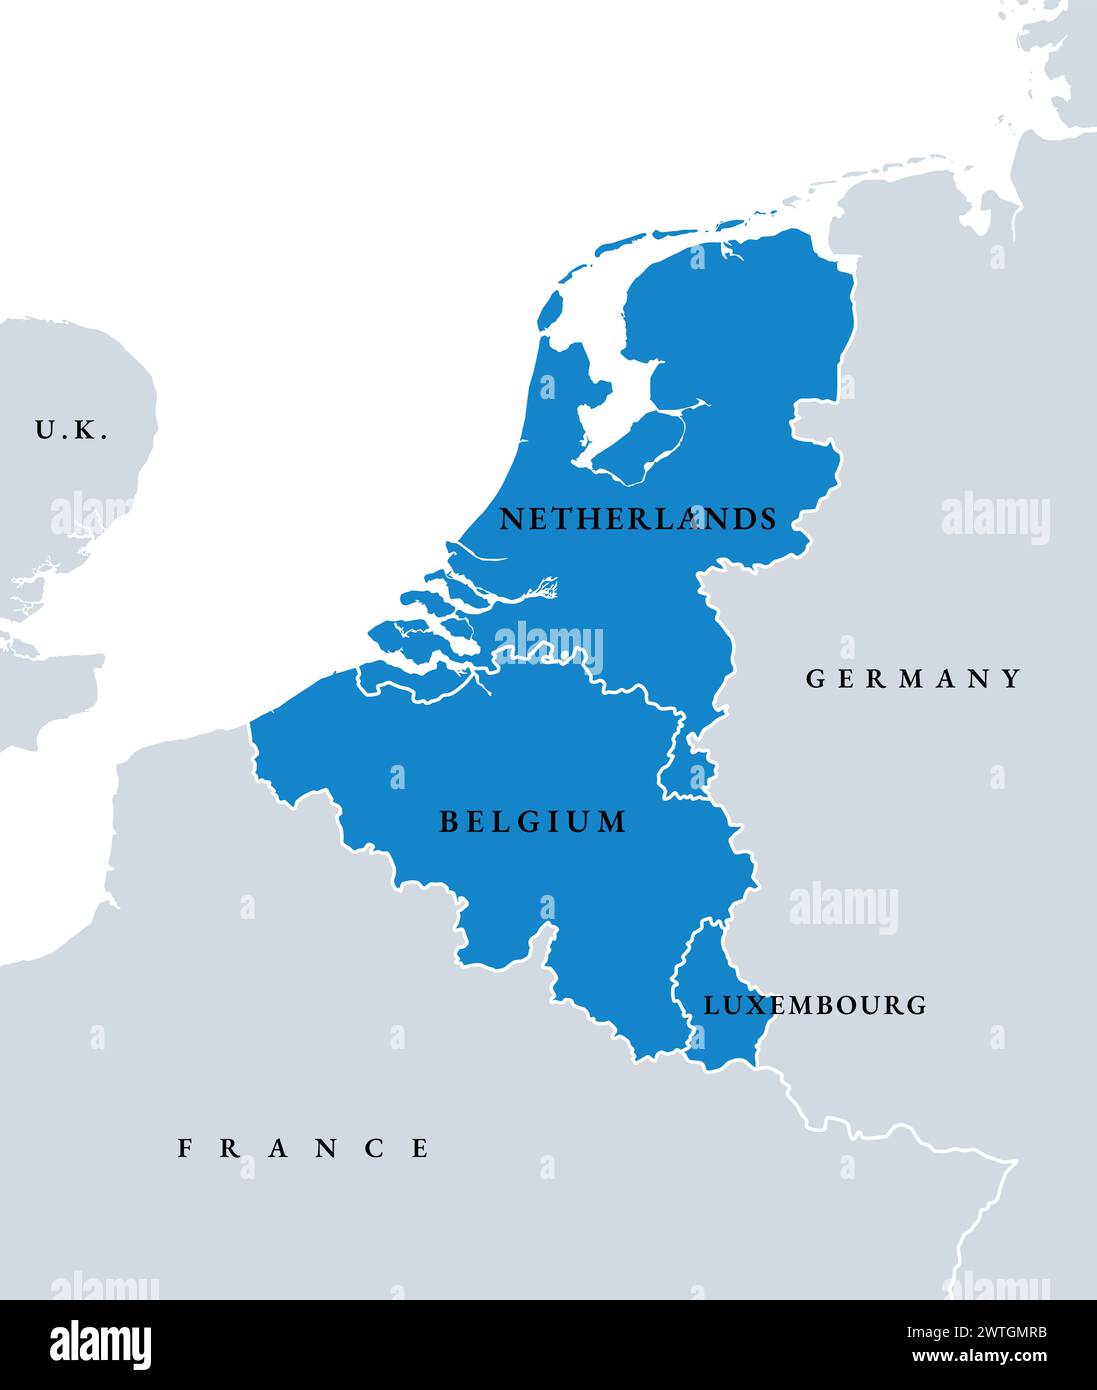 Países de la Unión del Benelux, mapa político. Cooperación de los Estados europeos Bélgica, los Países Bajos y Luxemburgo. Foto de stock